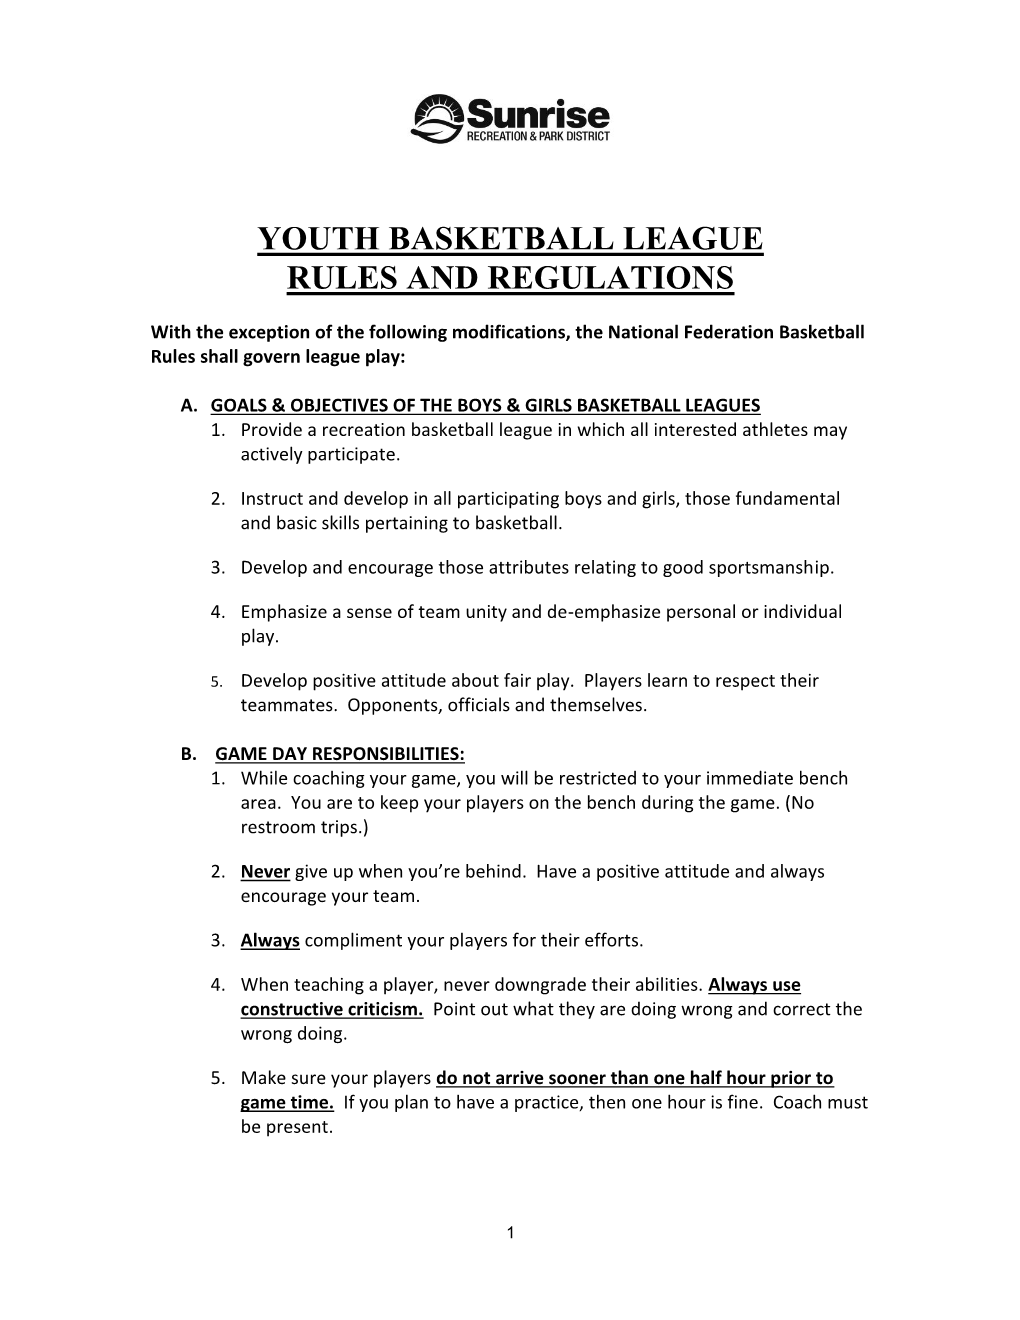 Basketball Rules for 4-6 Grade